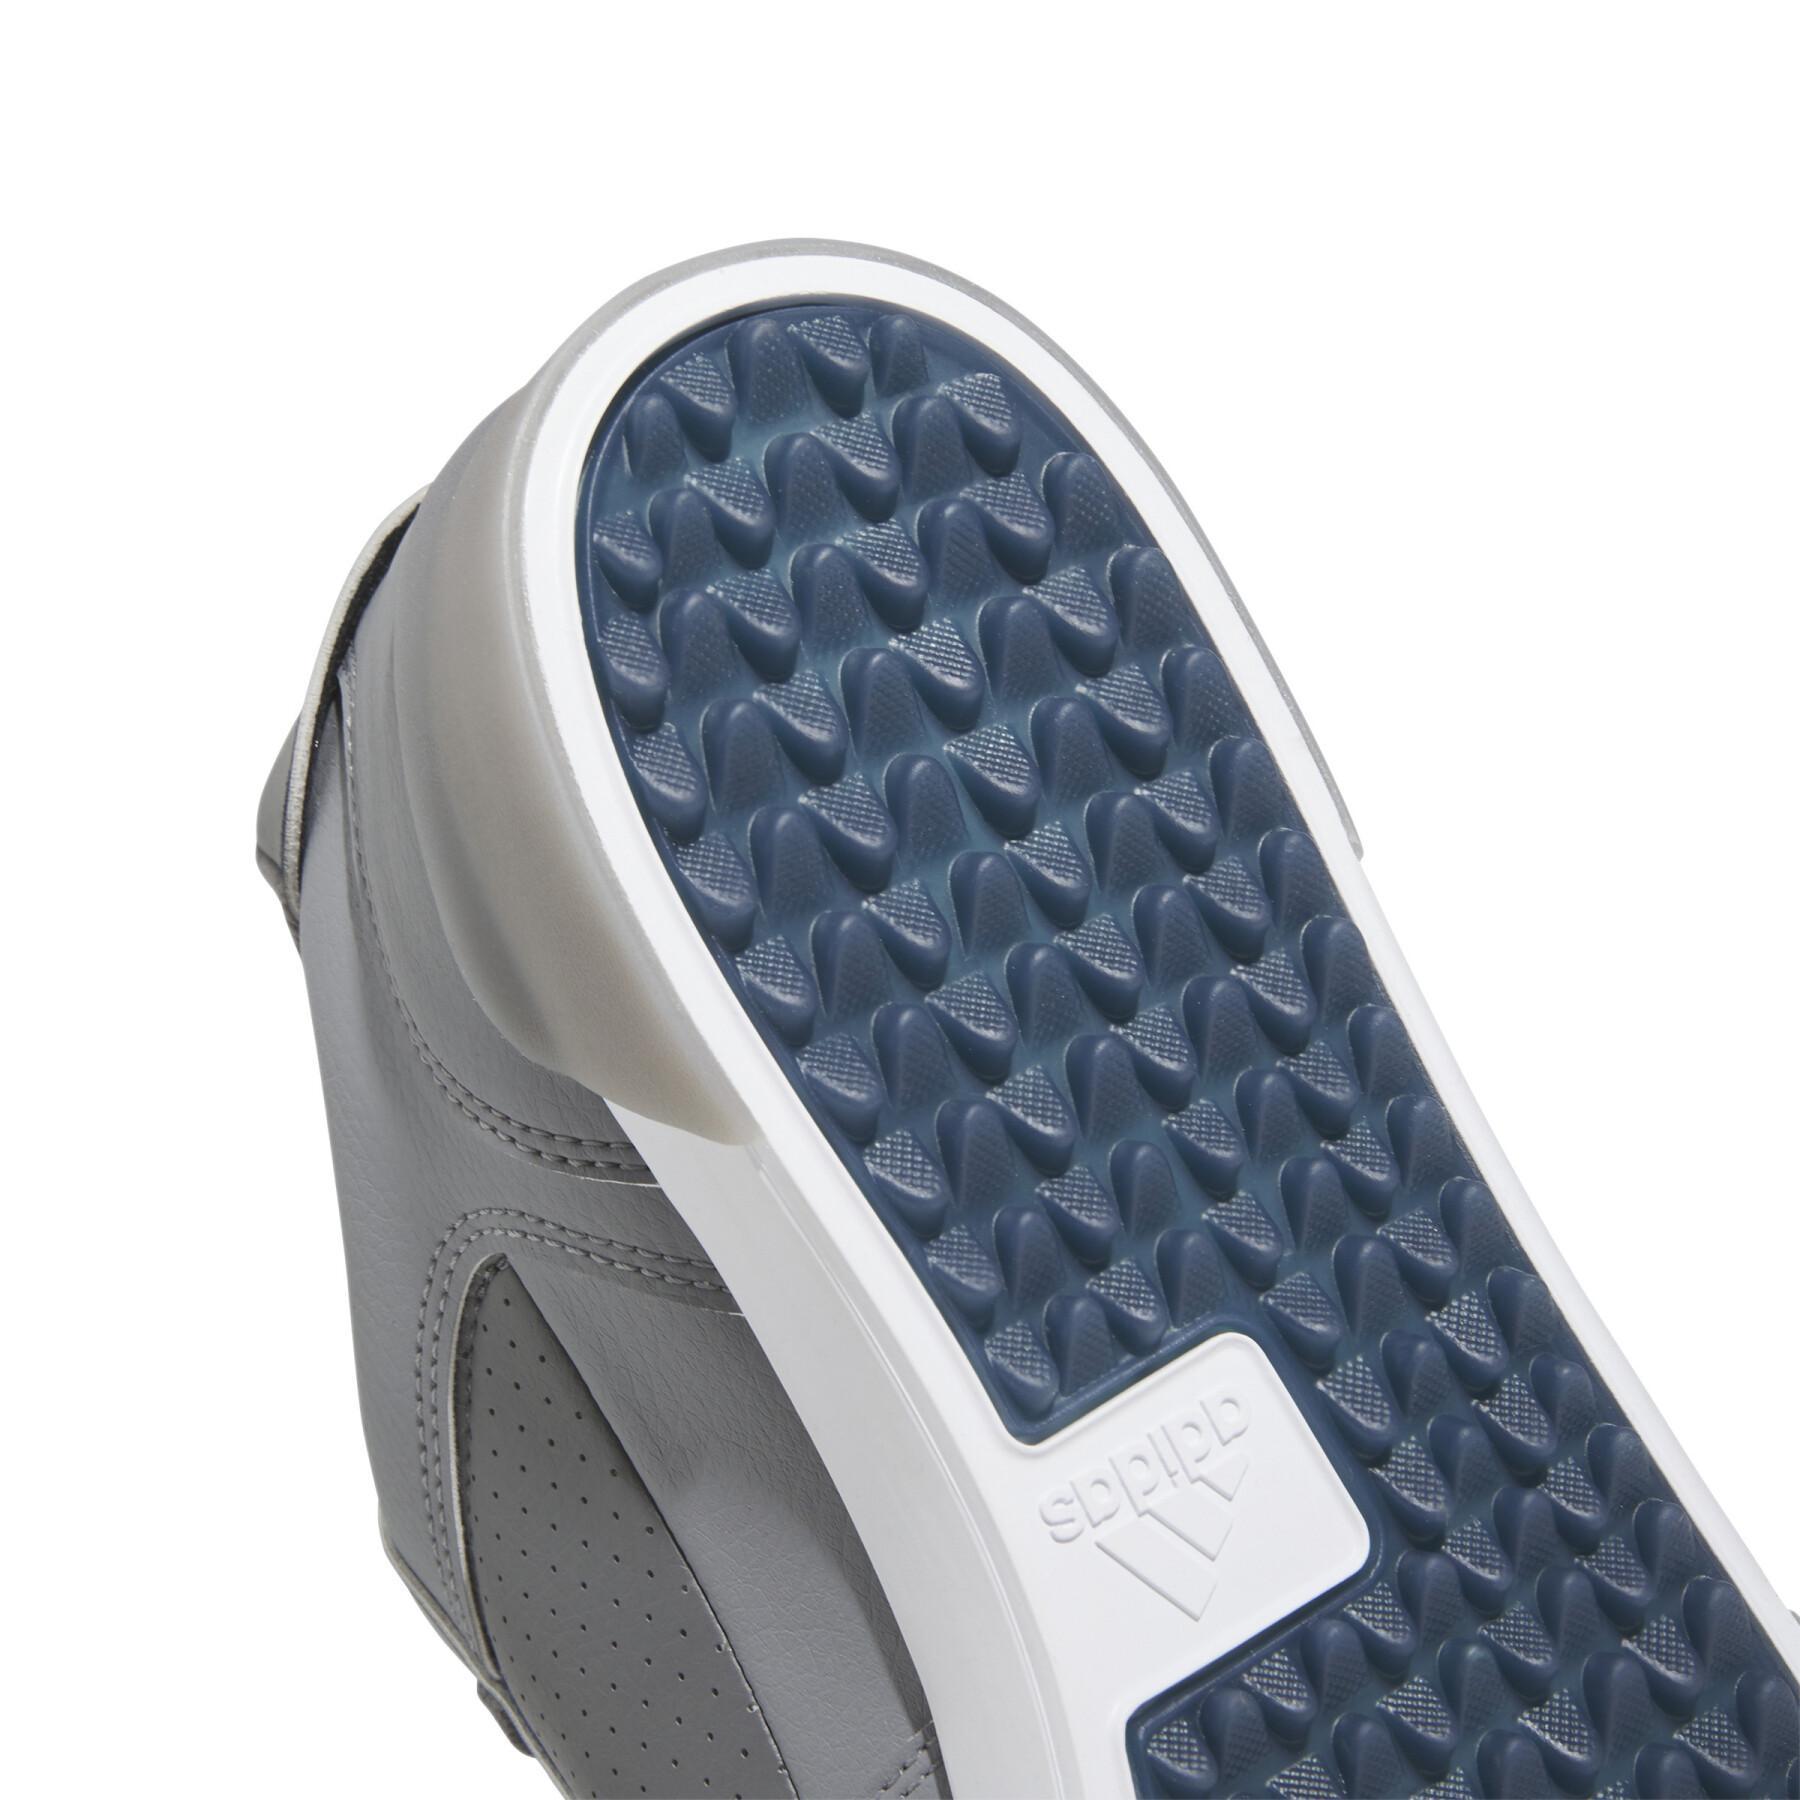 Spikeless golf shoes adidas Retrocross